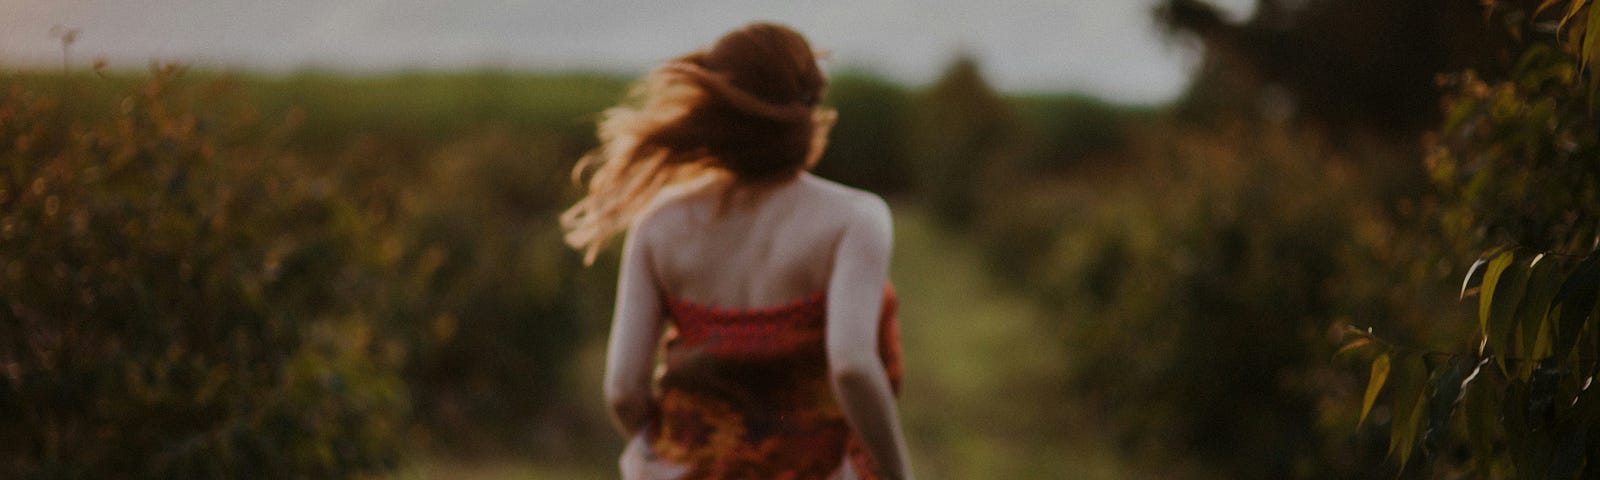 Woman wearing a flowery dress running in a meadow